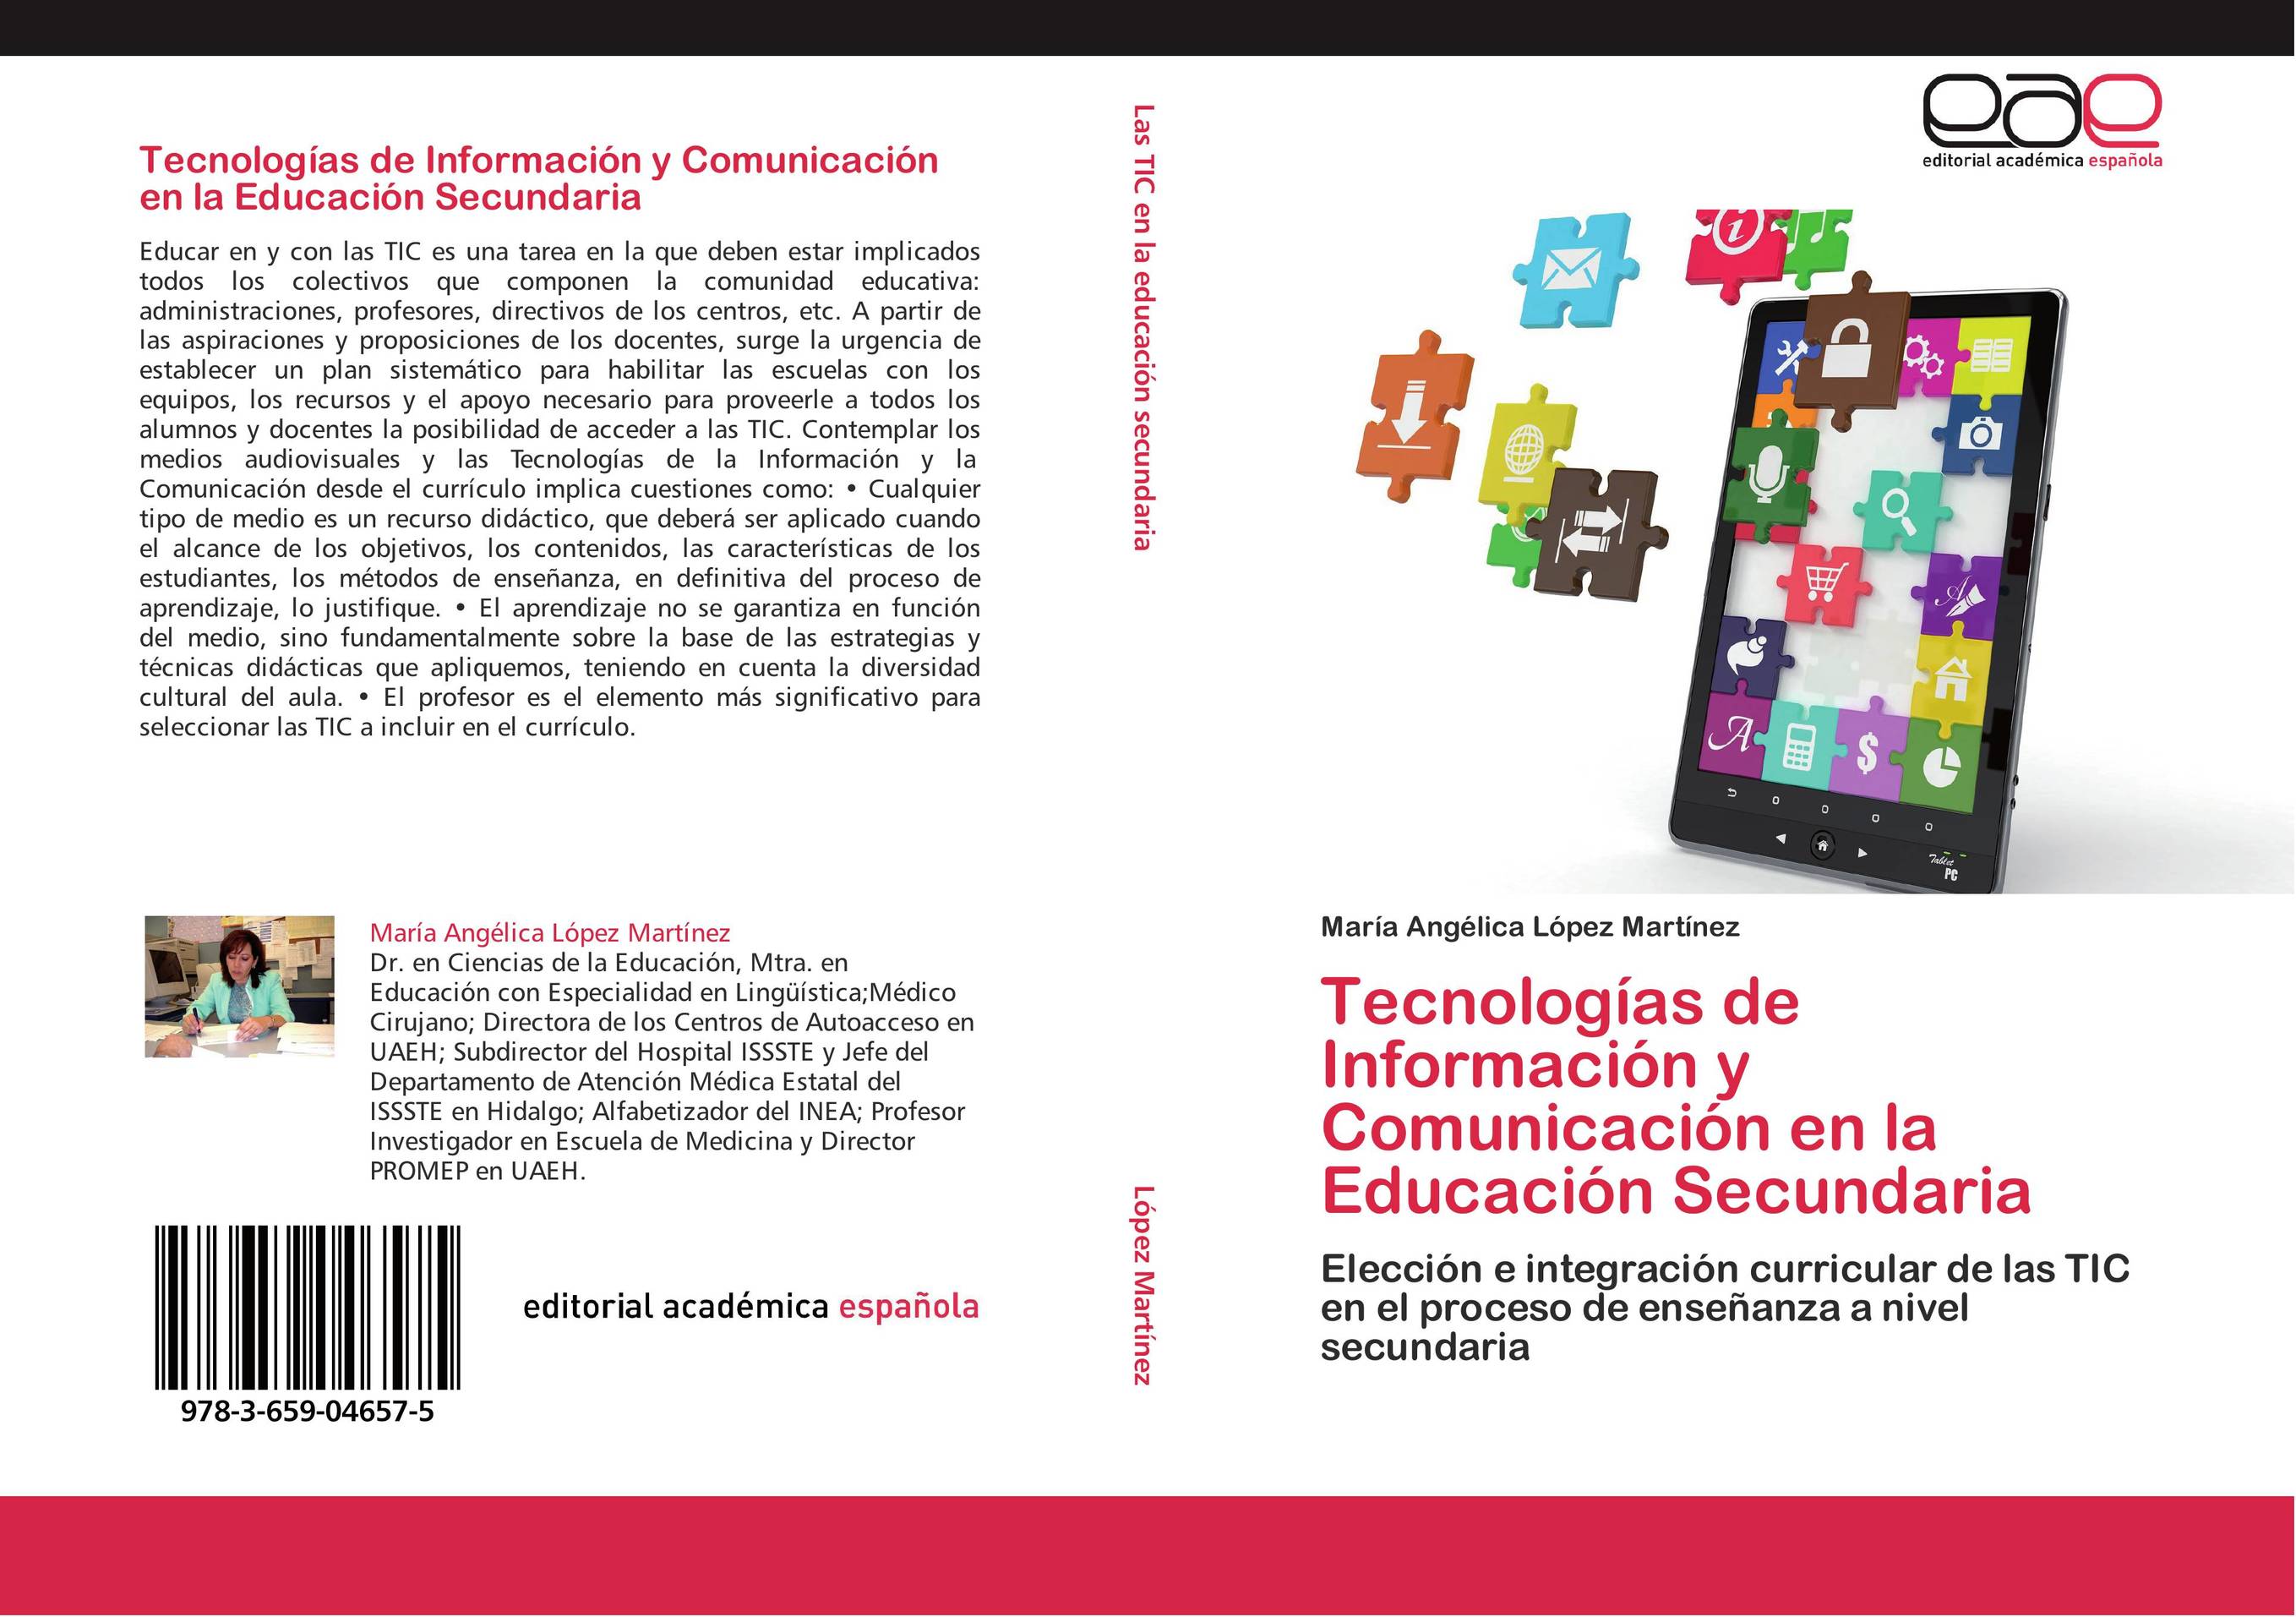 Tecnologías de Información y Comunicación en la Educación Secundaria